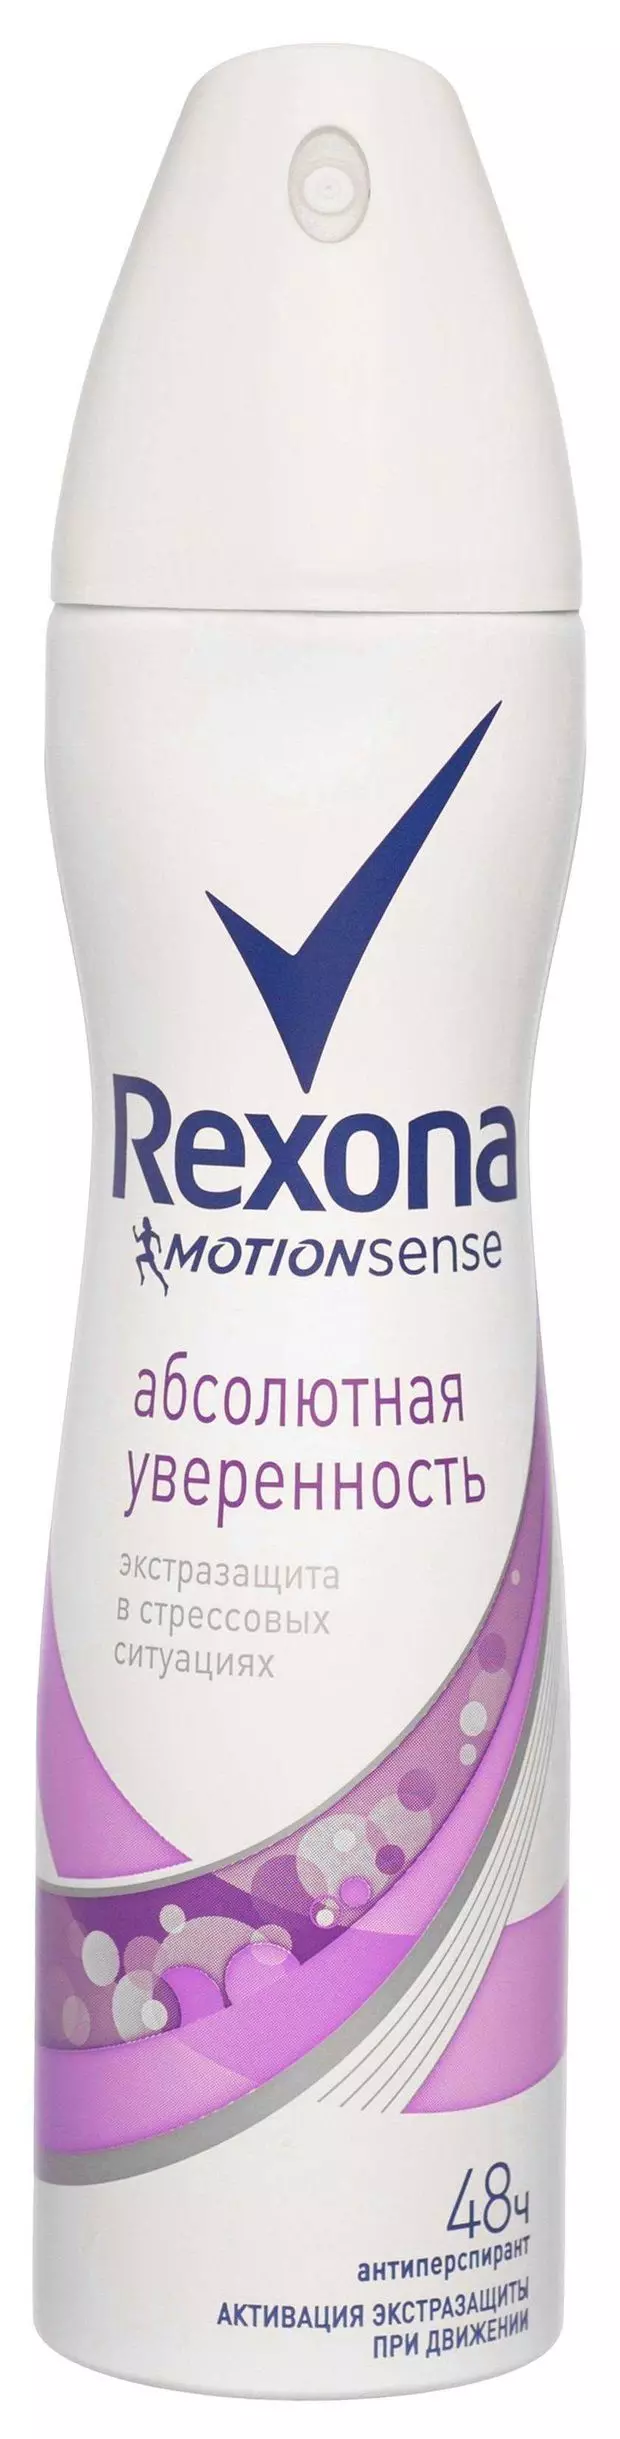 Дезодорант Rexona Абсолютная уверенность спрей 150мл